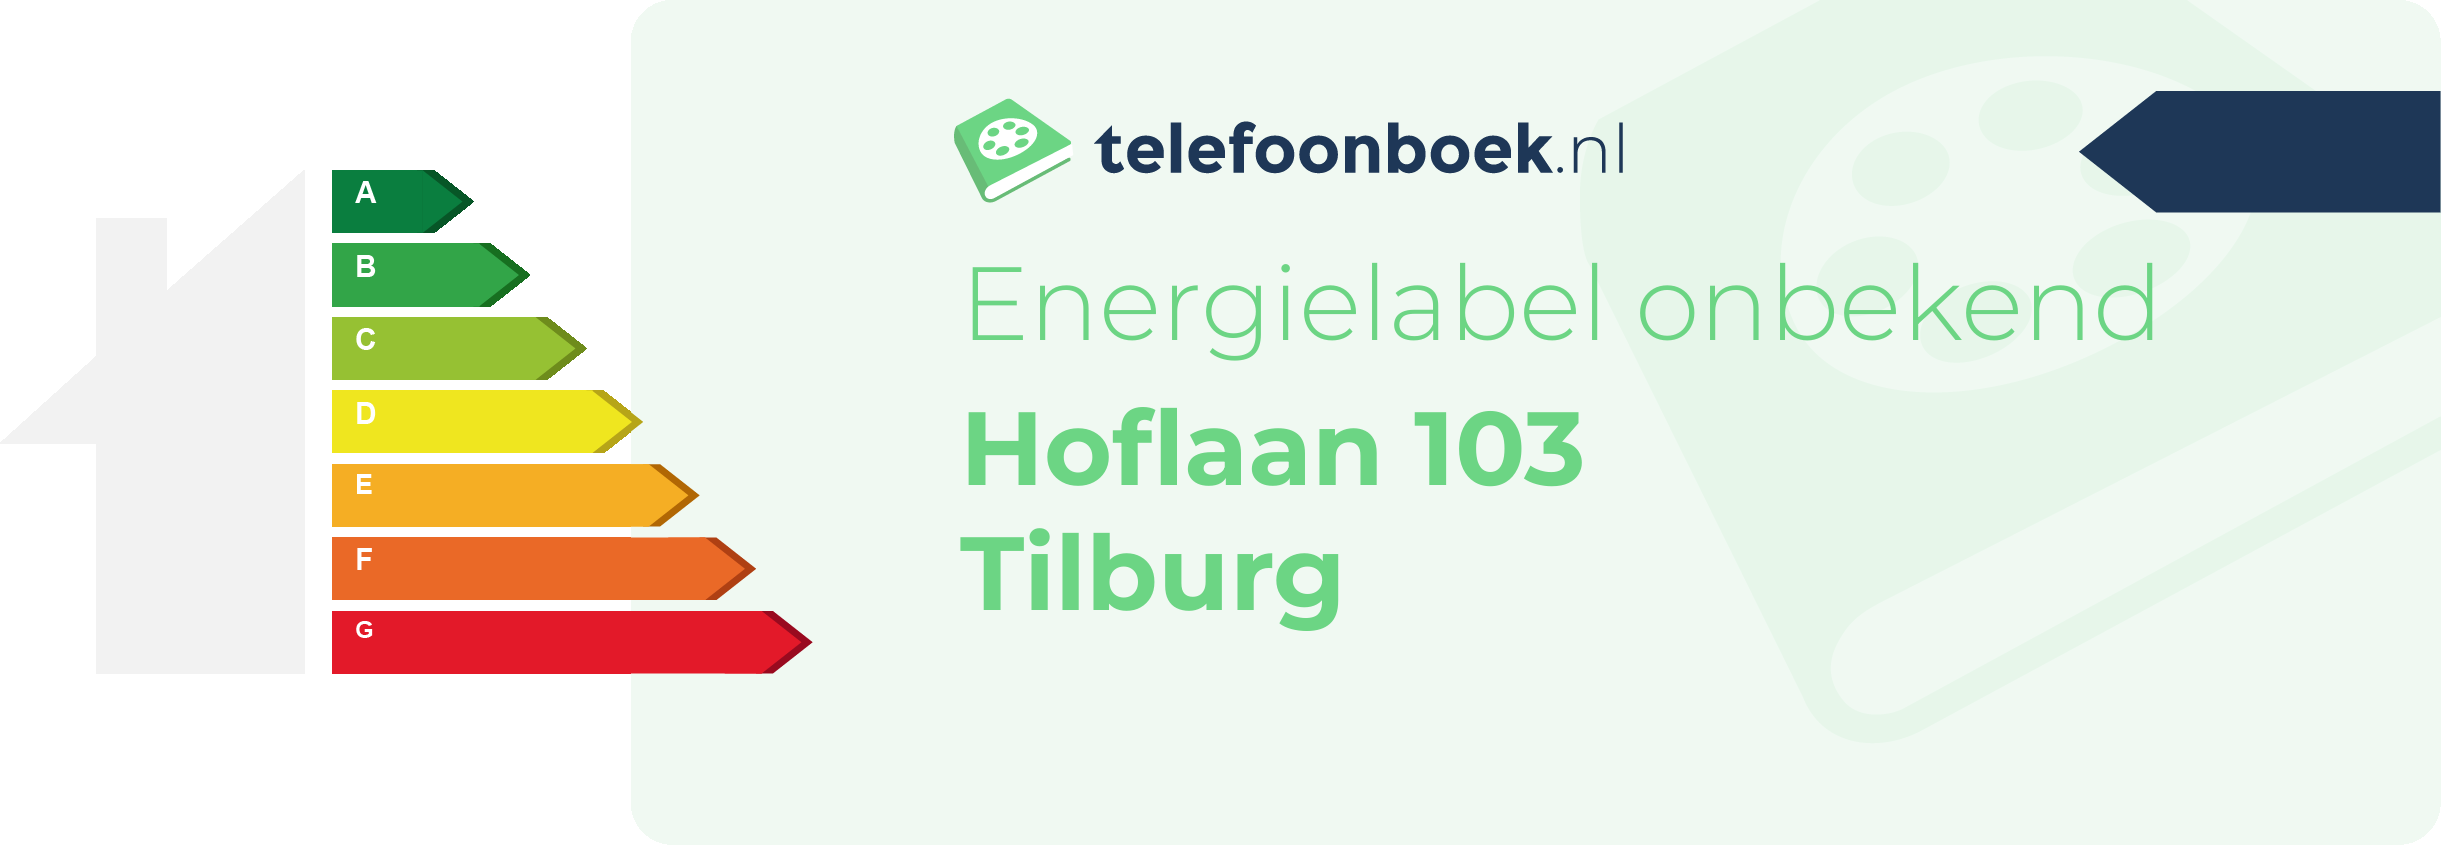 Energielabel Hoflaan 103 Tilburg